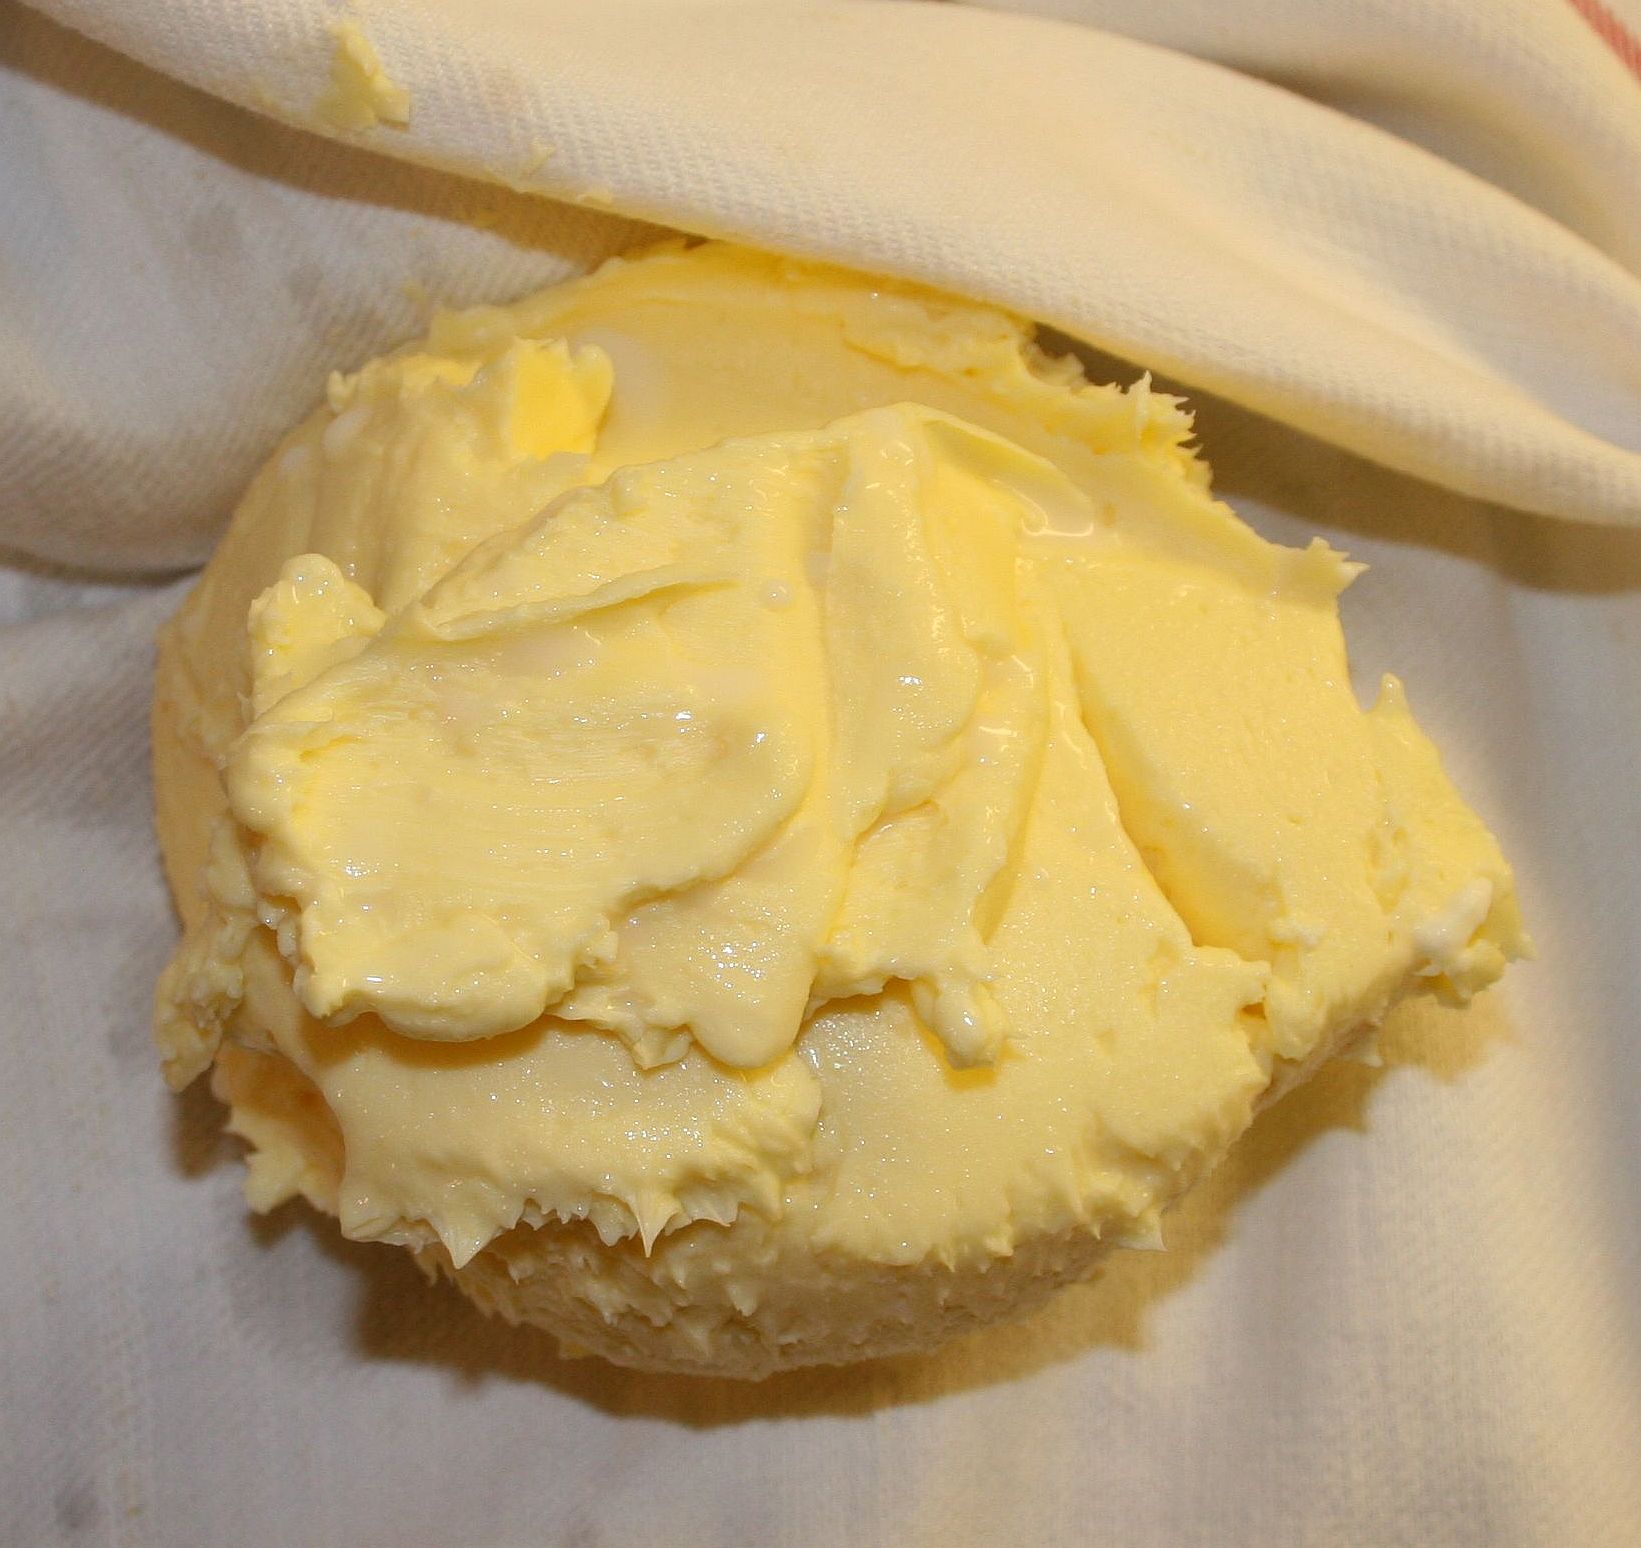 Fermented butter